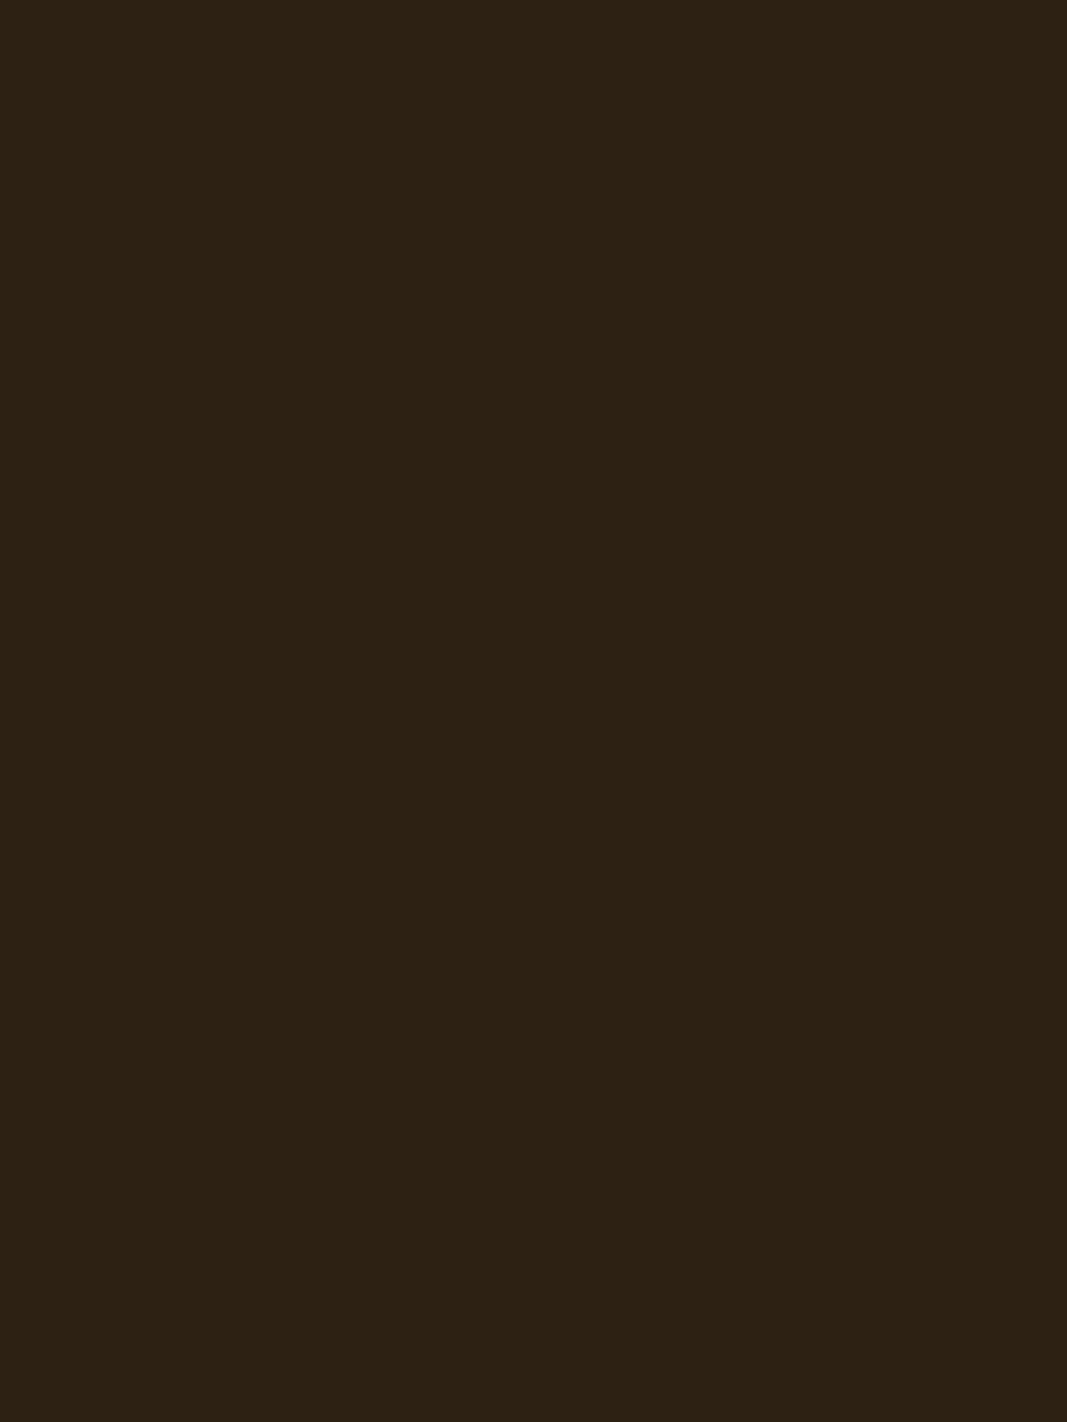 Василий Перов. Портрет Федора Достоевского. 1872. Государственная Третьяковская галерея, Москва